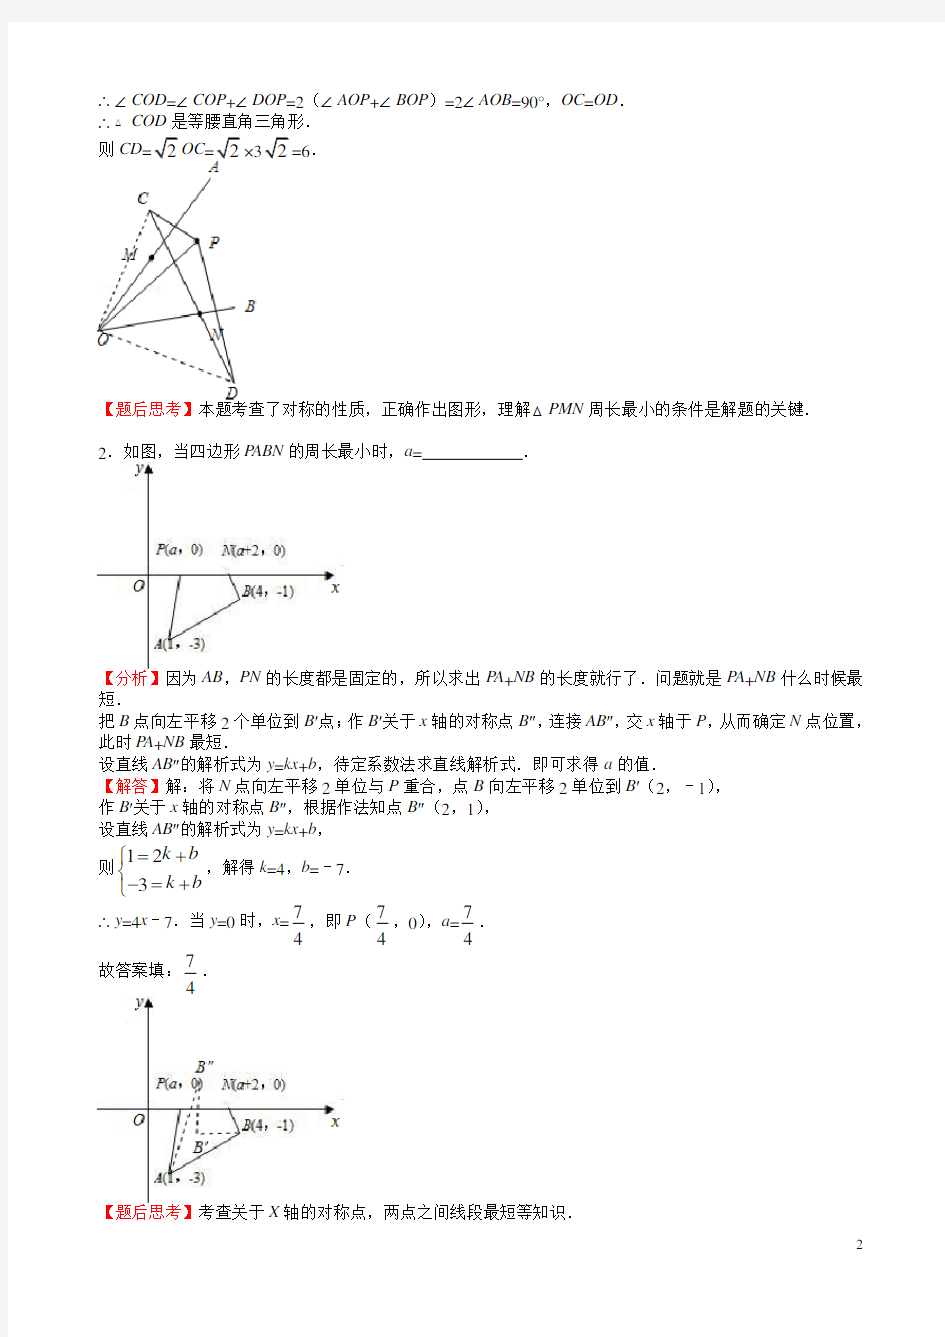 (完整版)初中数学《几何最值问题》典型例题